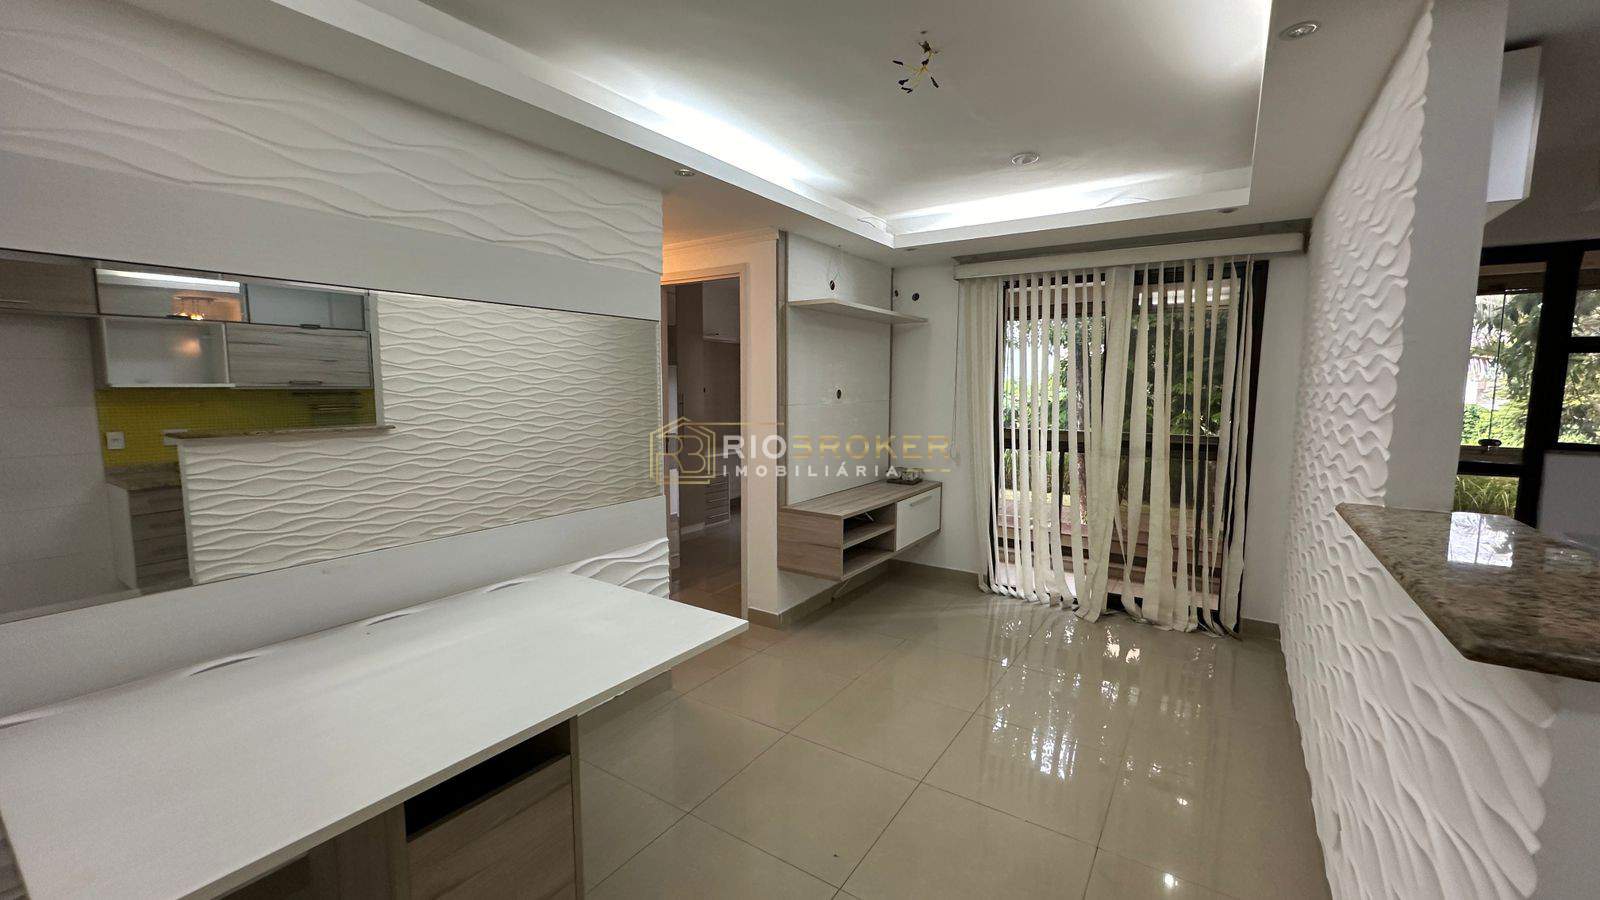 Apartamento de 2 quartos à venda - CAMPO GRANDE - Condomínio Life Resort